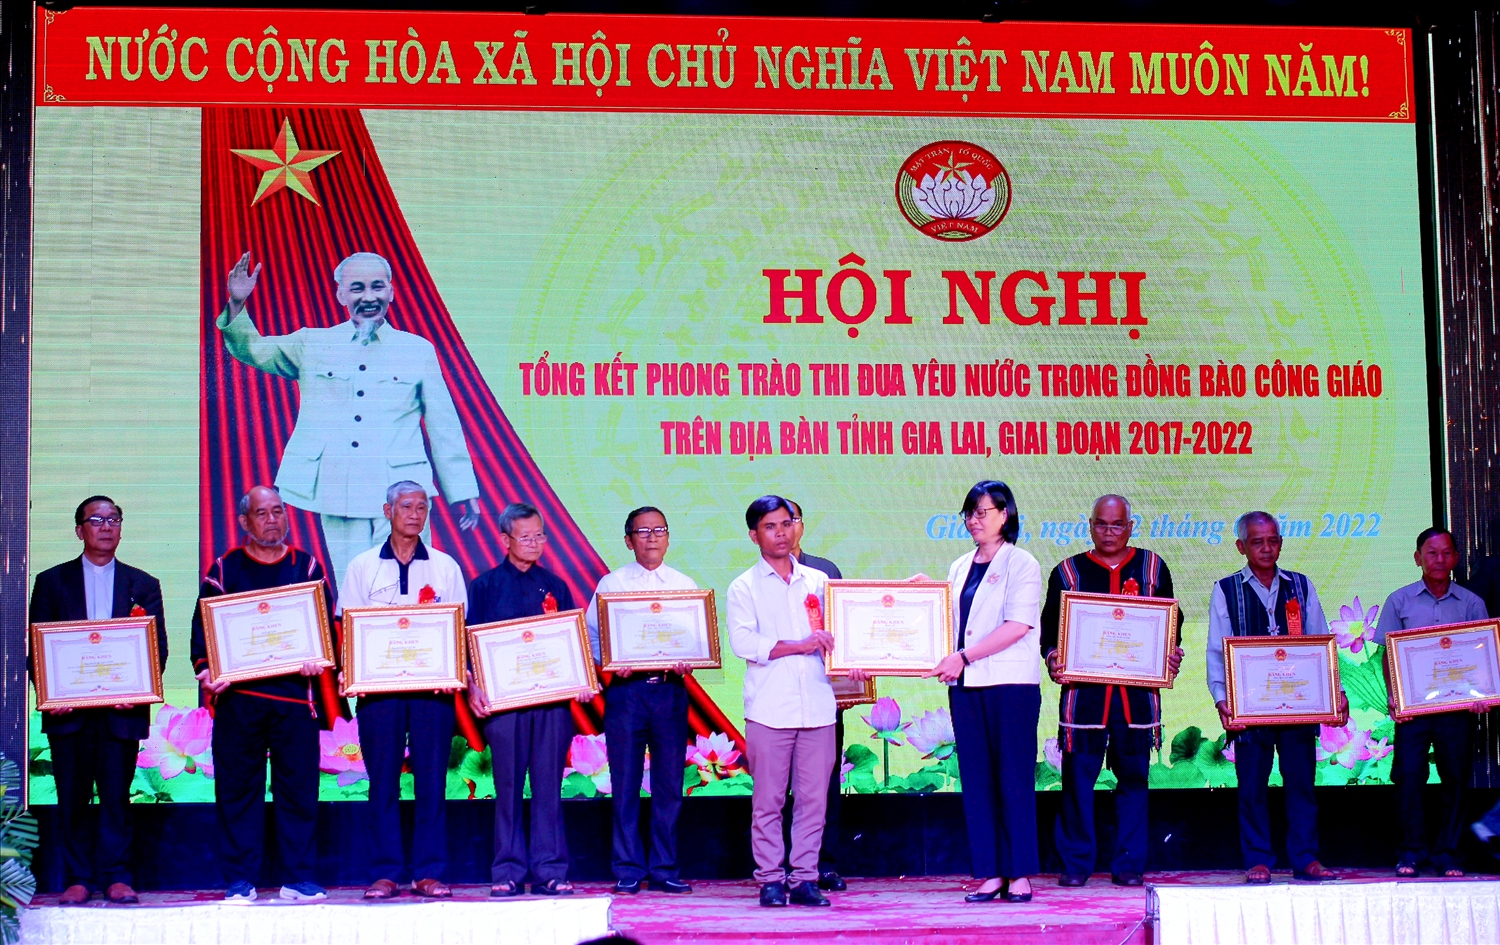 Lãnh đạo UBND tỉnh Gia Lai tặng Bằng khen cho các cá nhân đã có thành tích xuất sắc trong phong trào thi đua yêu nước trên địa bàn tỉnh, giai đoạn 2017-2022